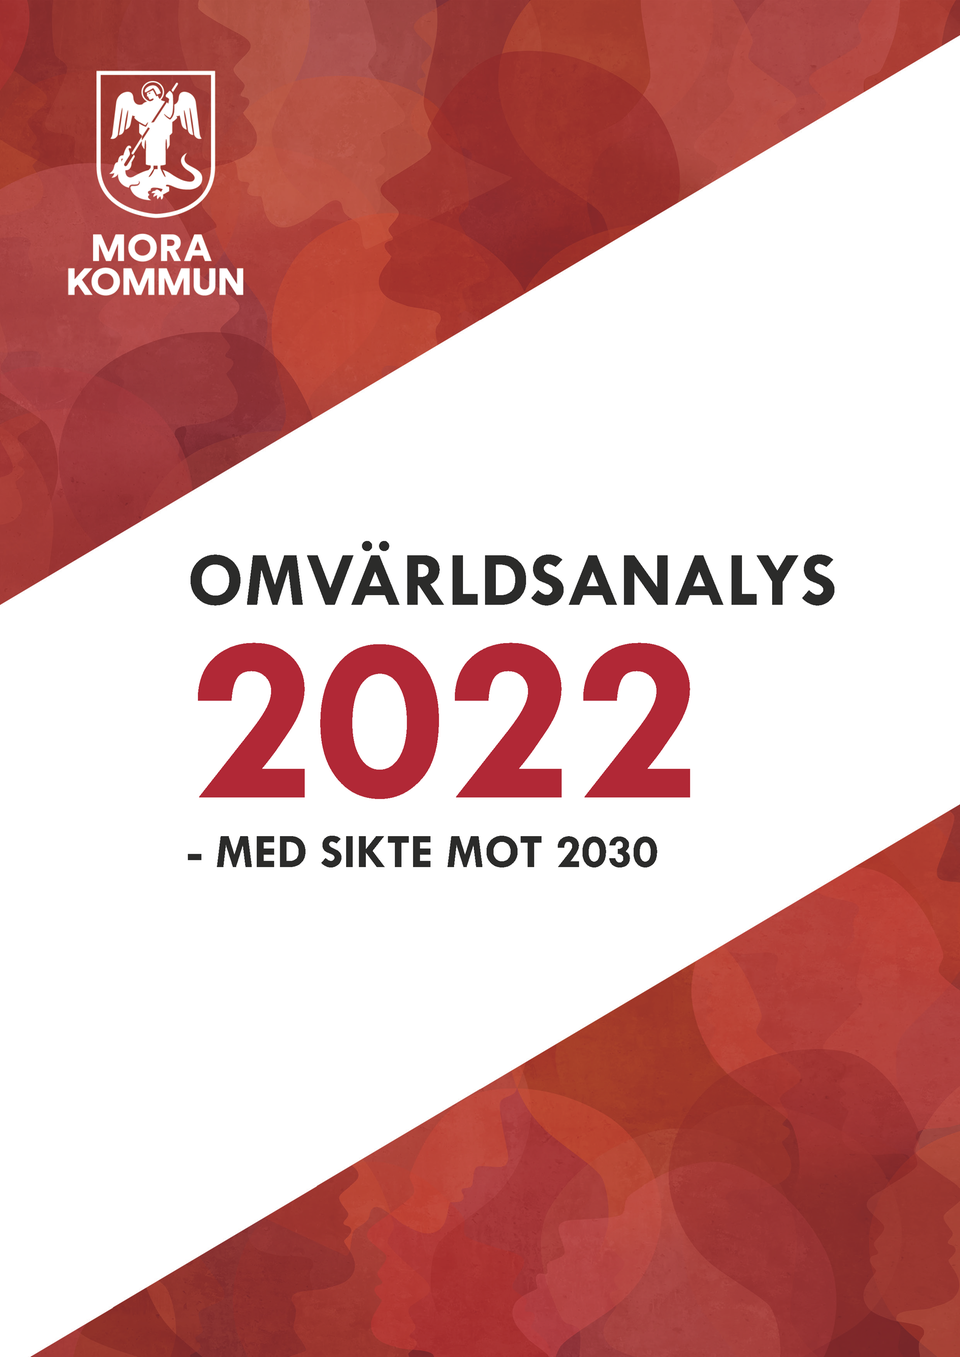 Omslaget av Omvärldsanalys 2022 med sikte mot 2030